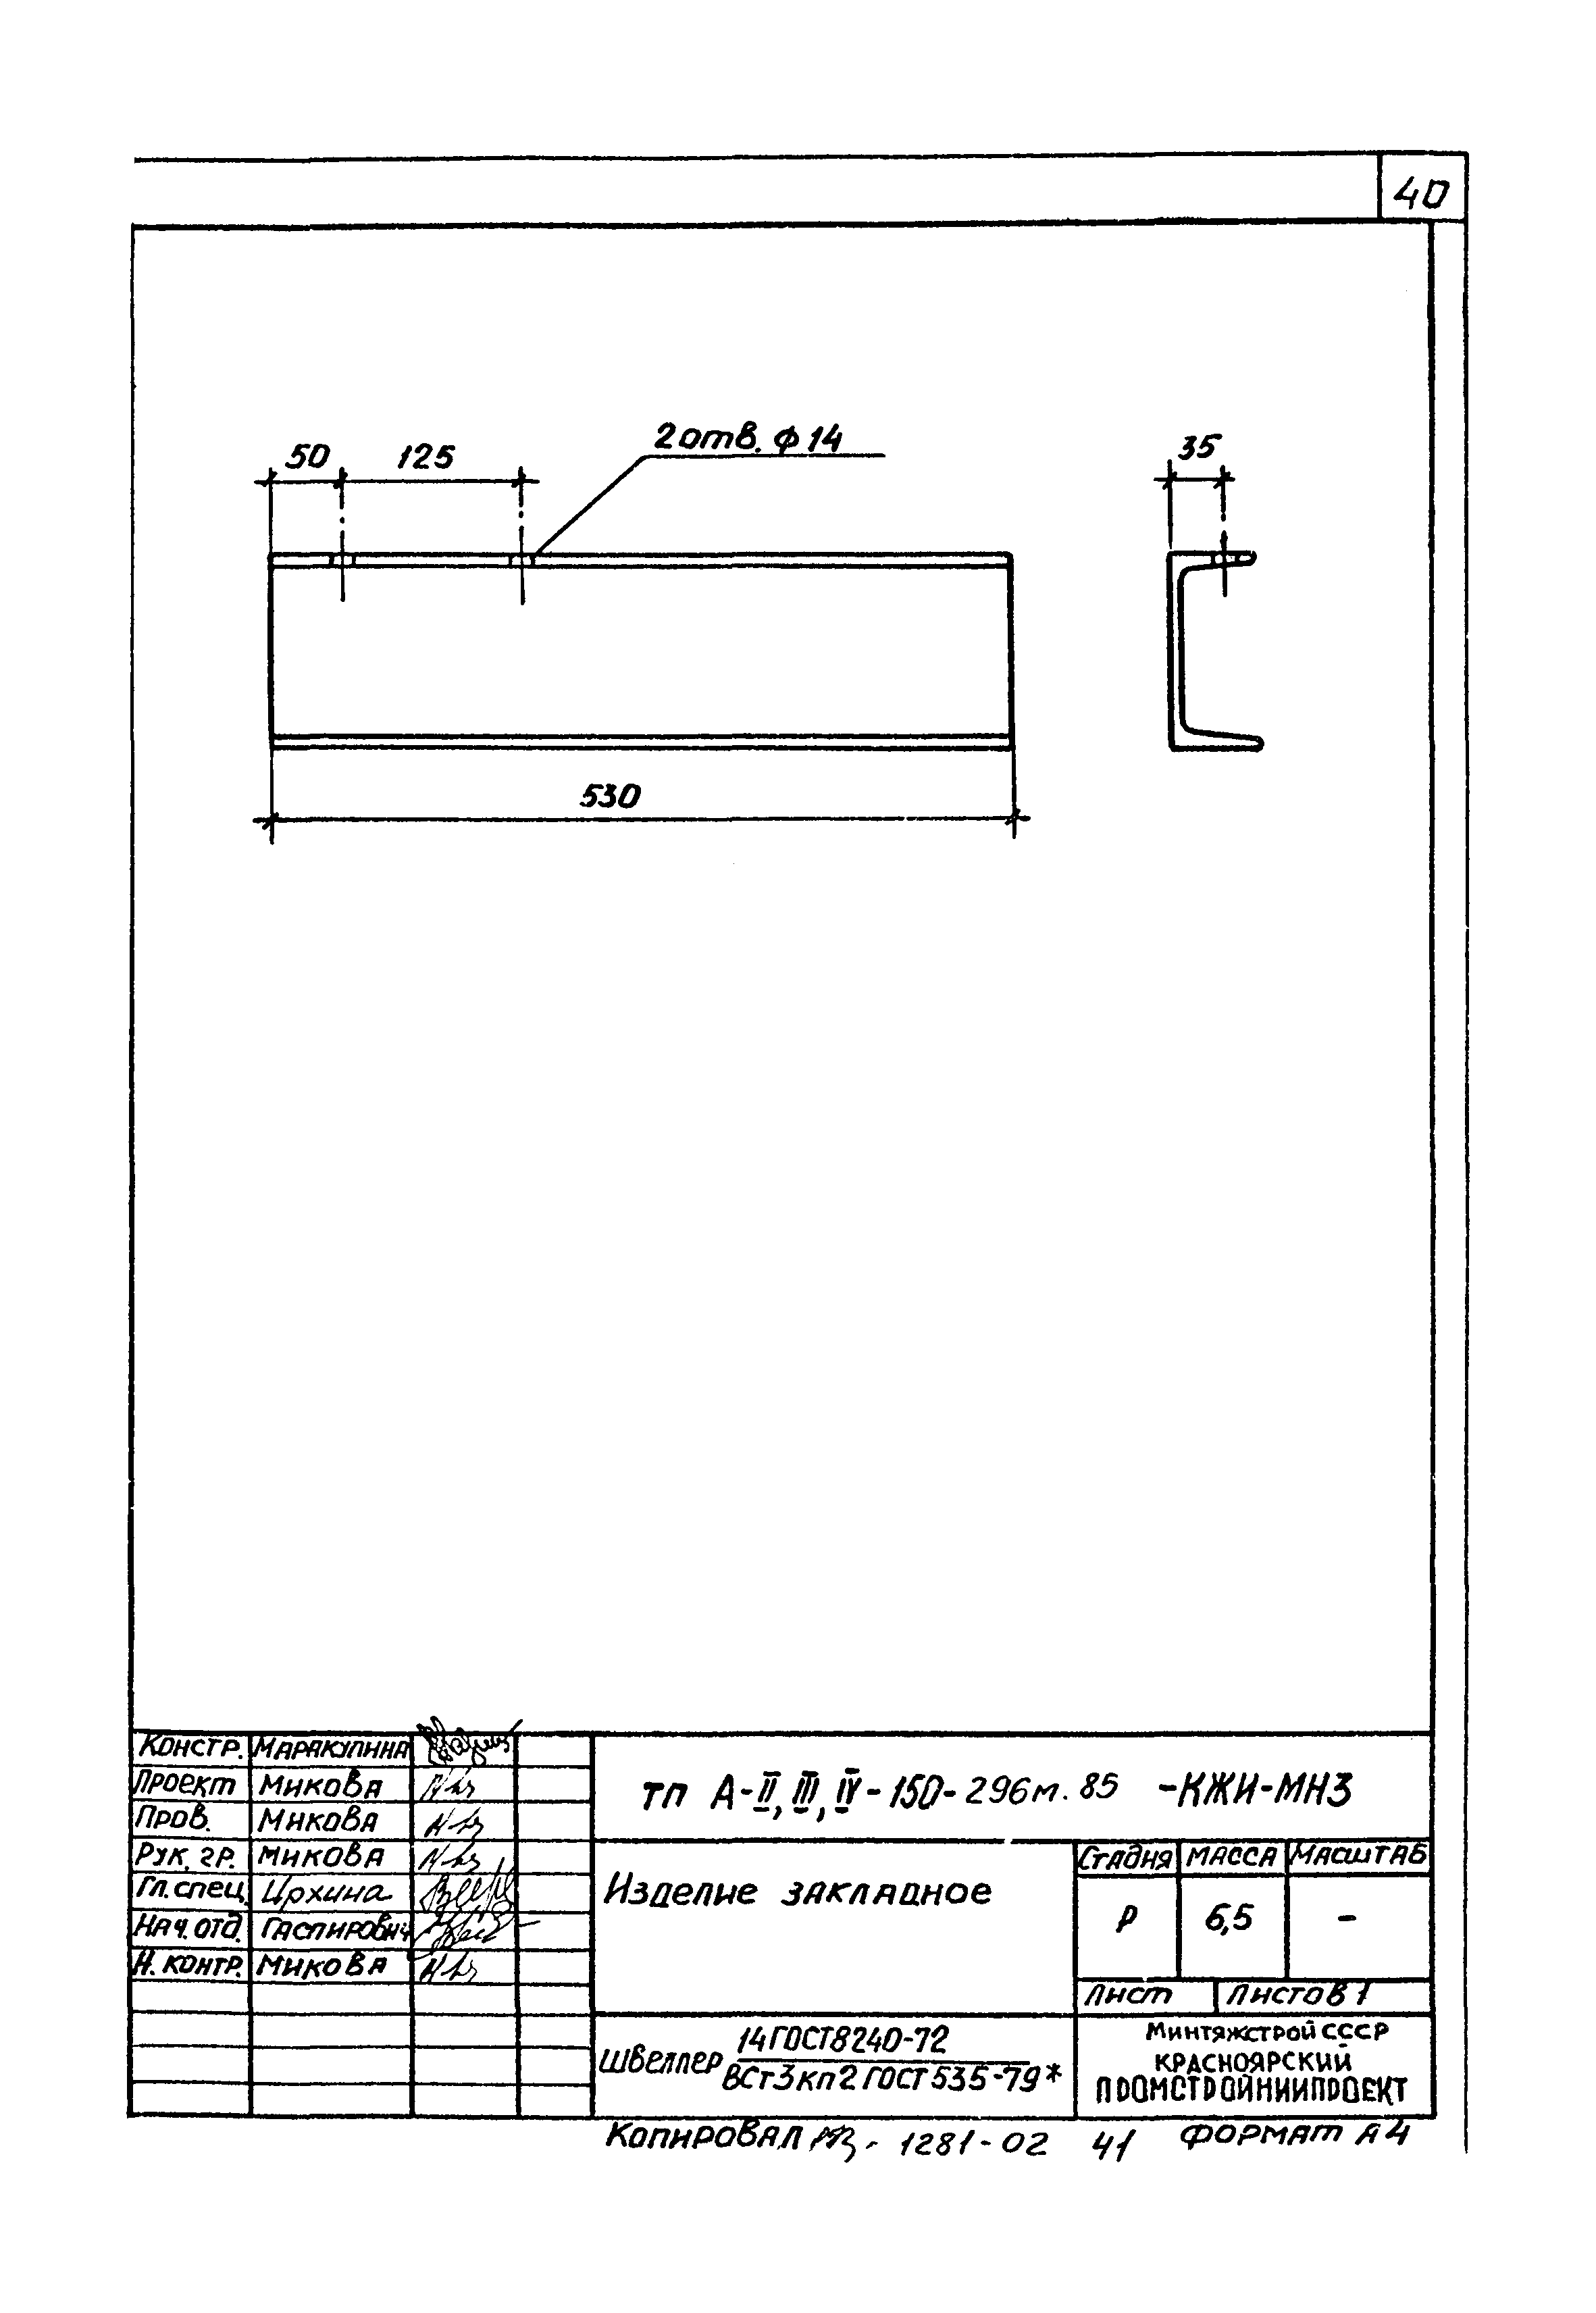 Типовой проект А-II,III,IV-150-296м.85